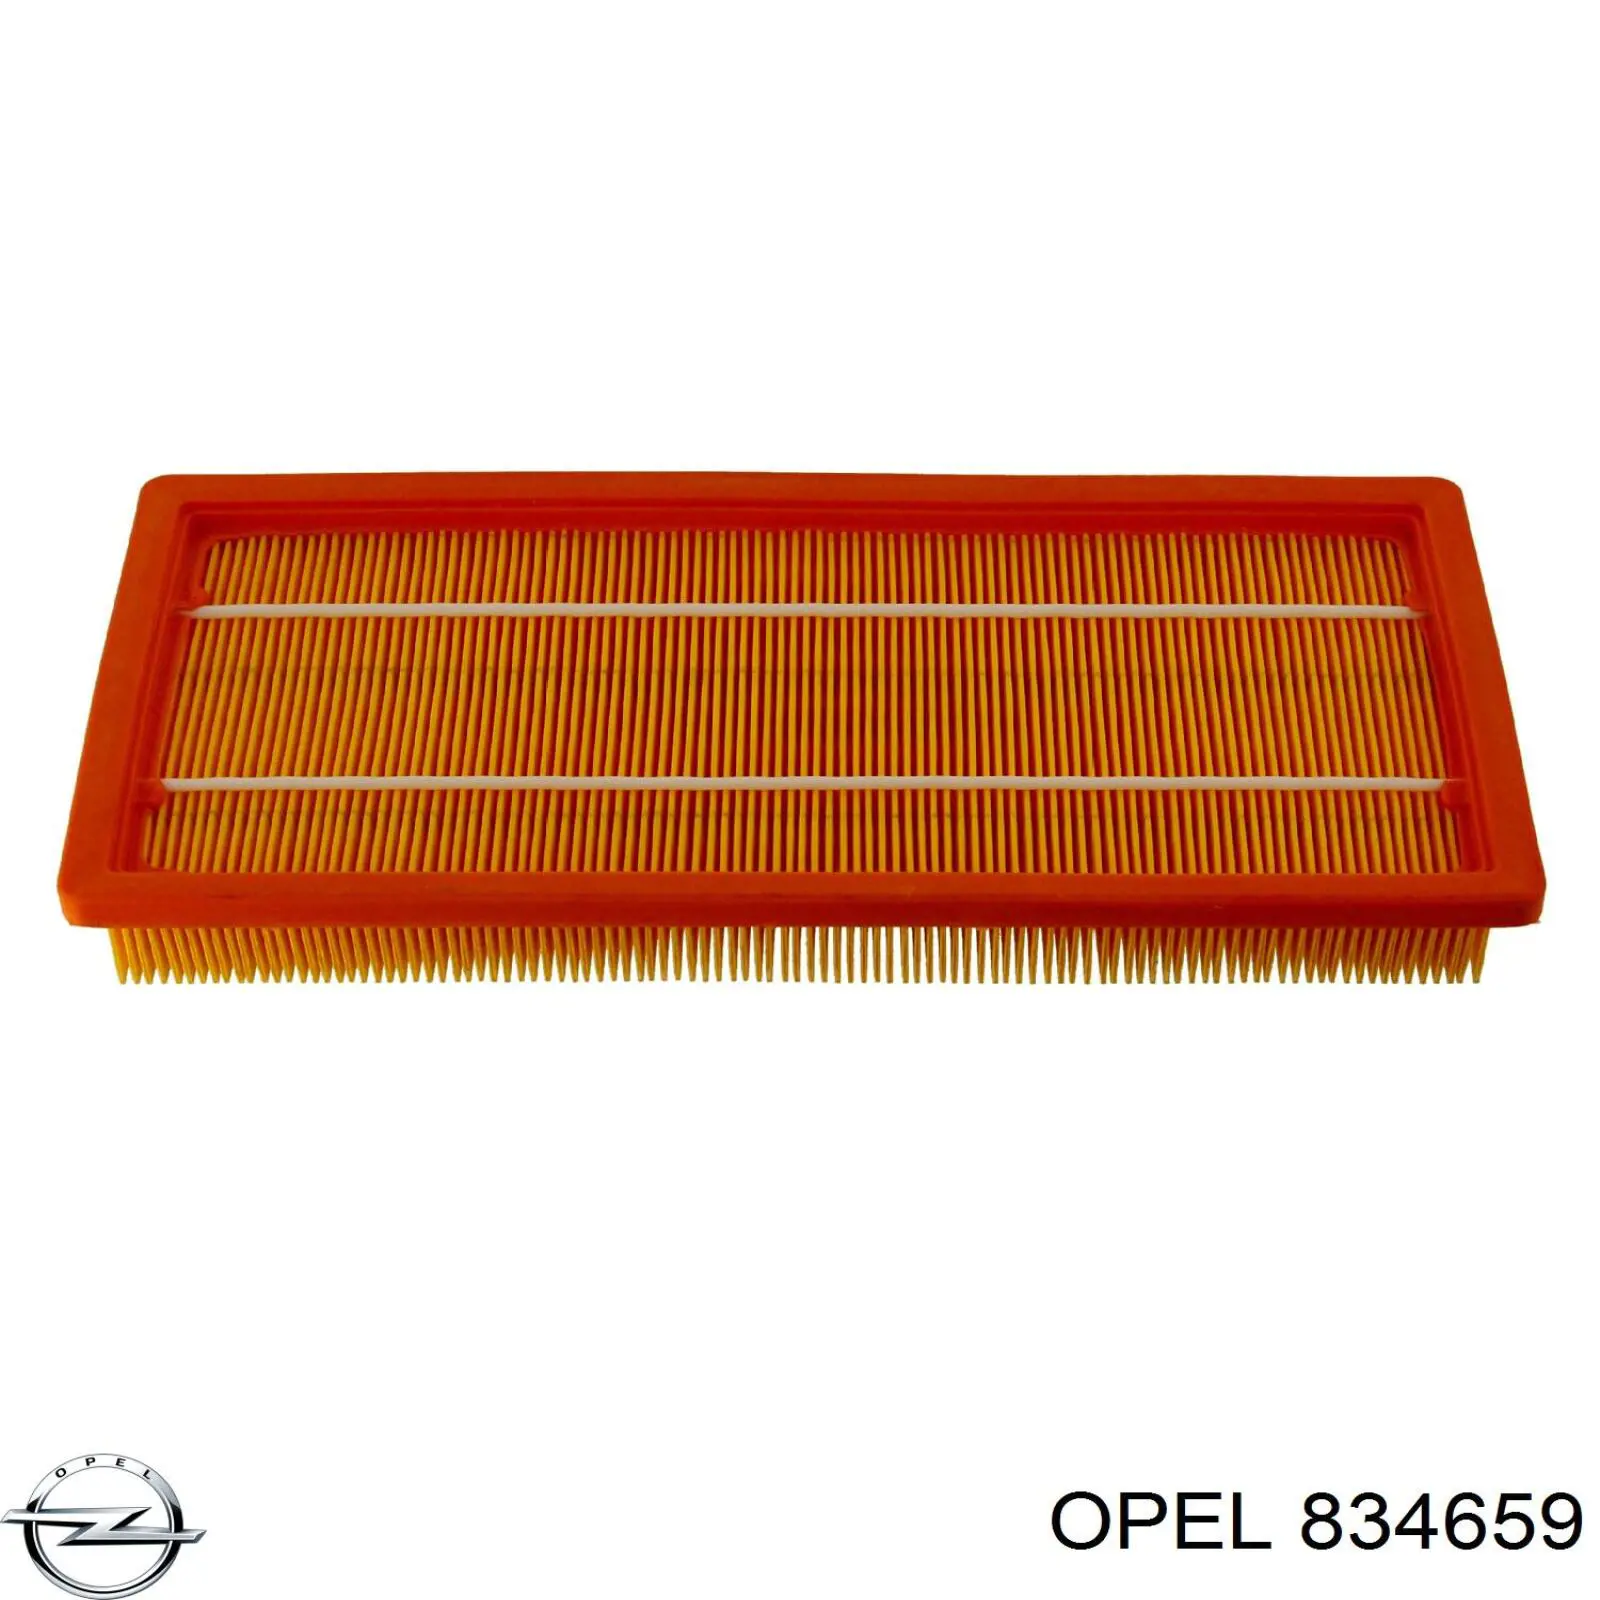 834659 Opel filtro de aire